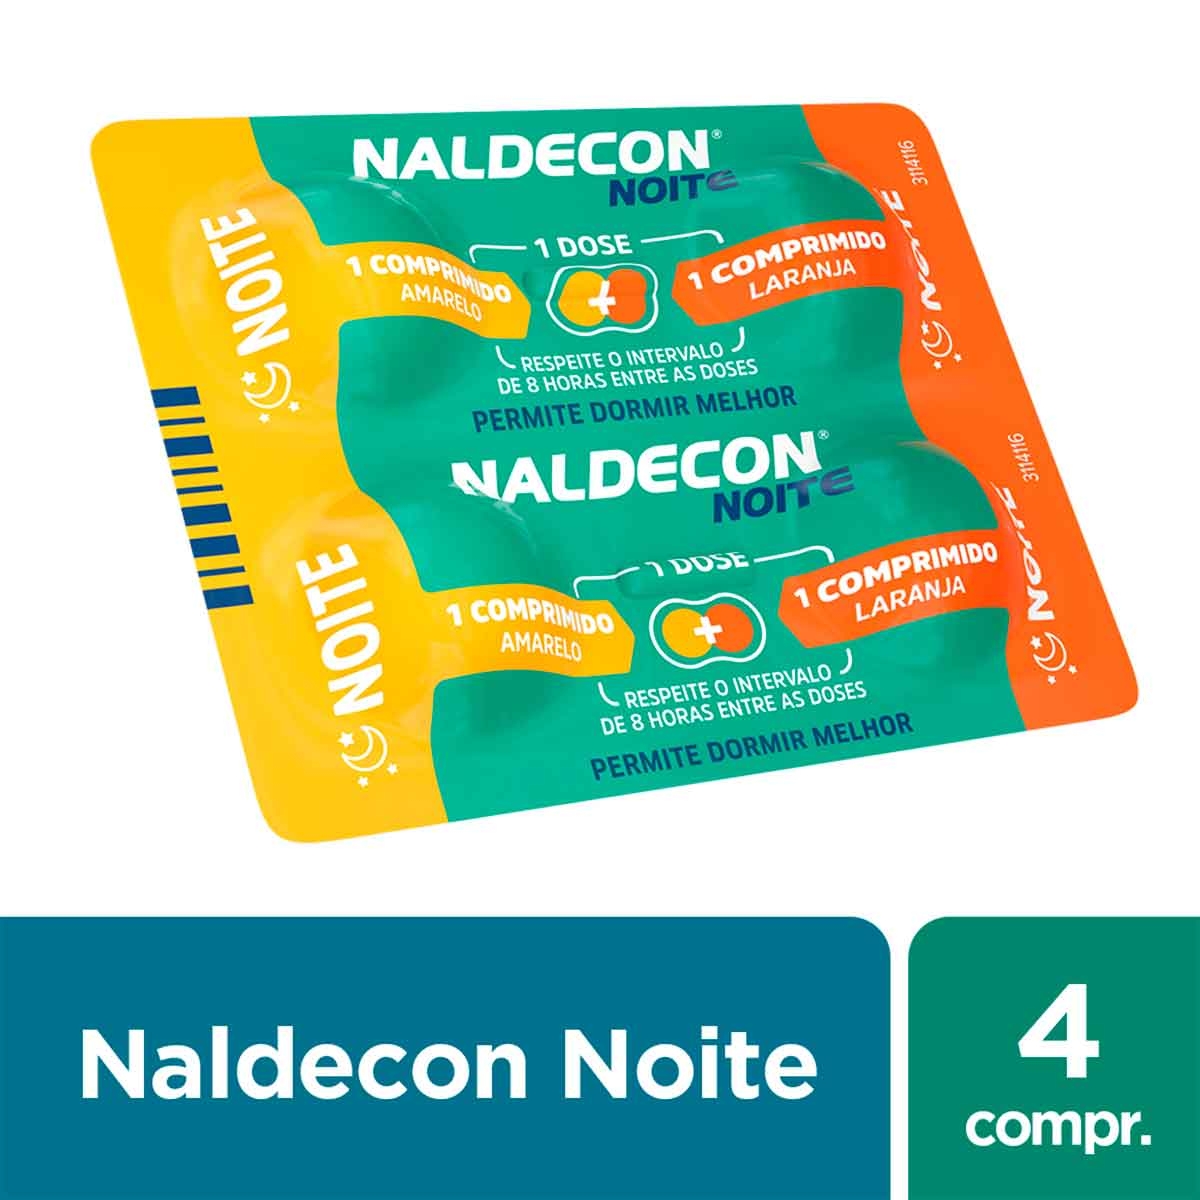 Naldecon Pack Dia e Noite 6 comprimidos com menor preço | Droga Raia